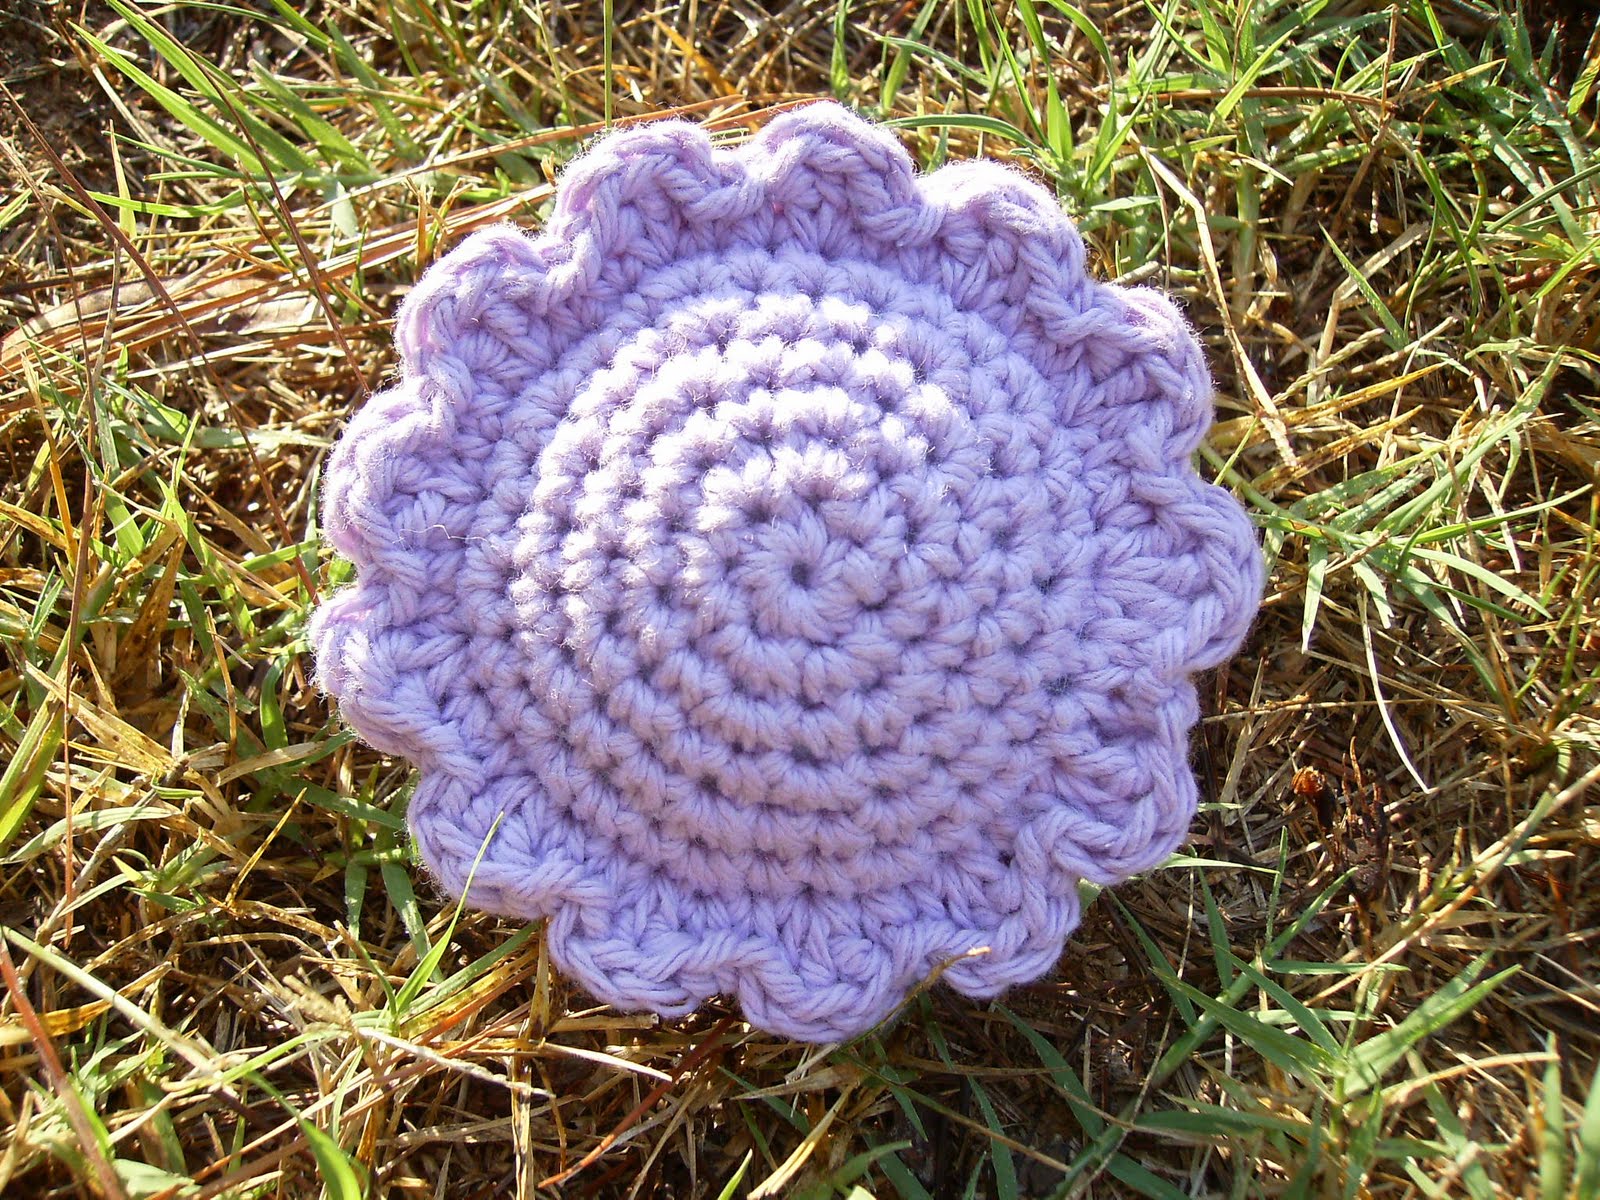 Scrap Yarn Crochet: Free Self-Scenting Sachet Crochet Pattern